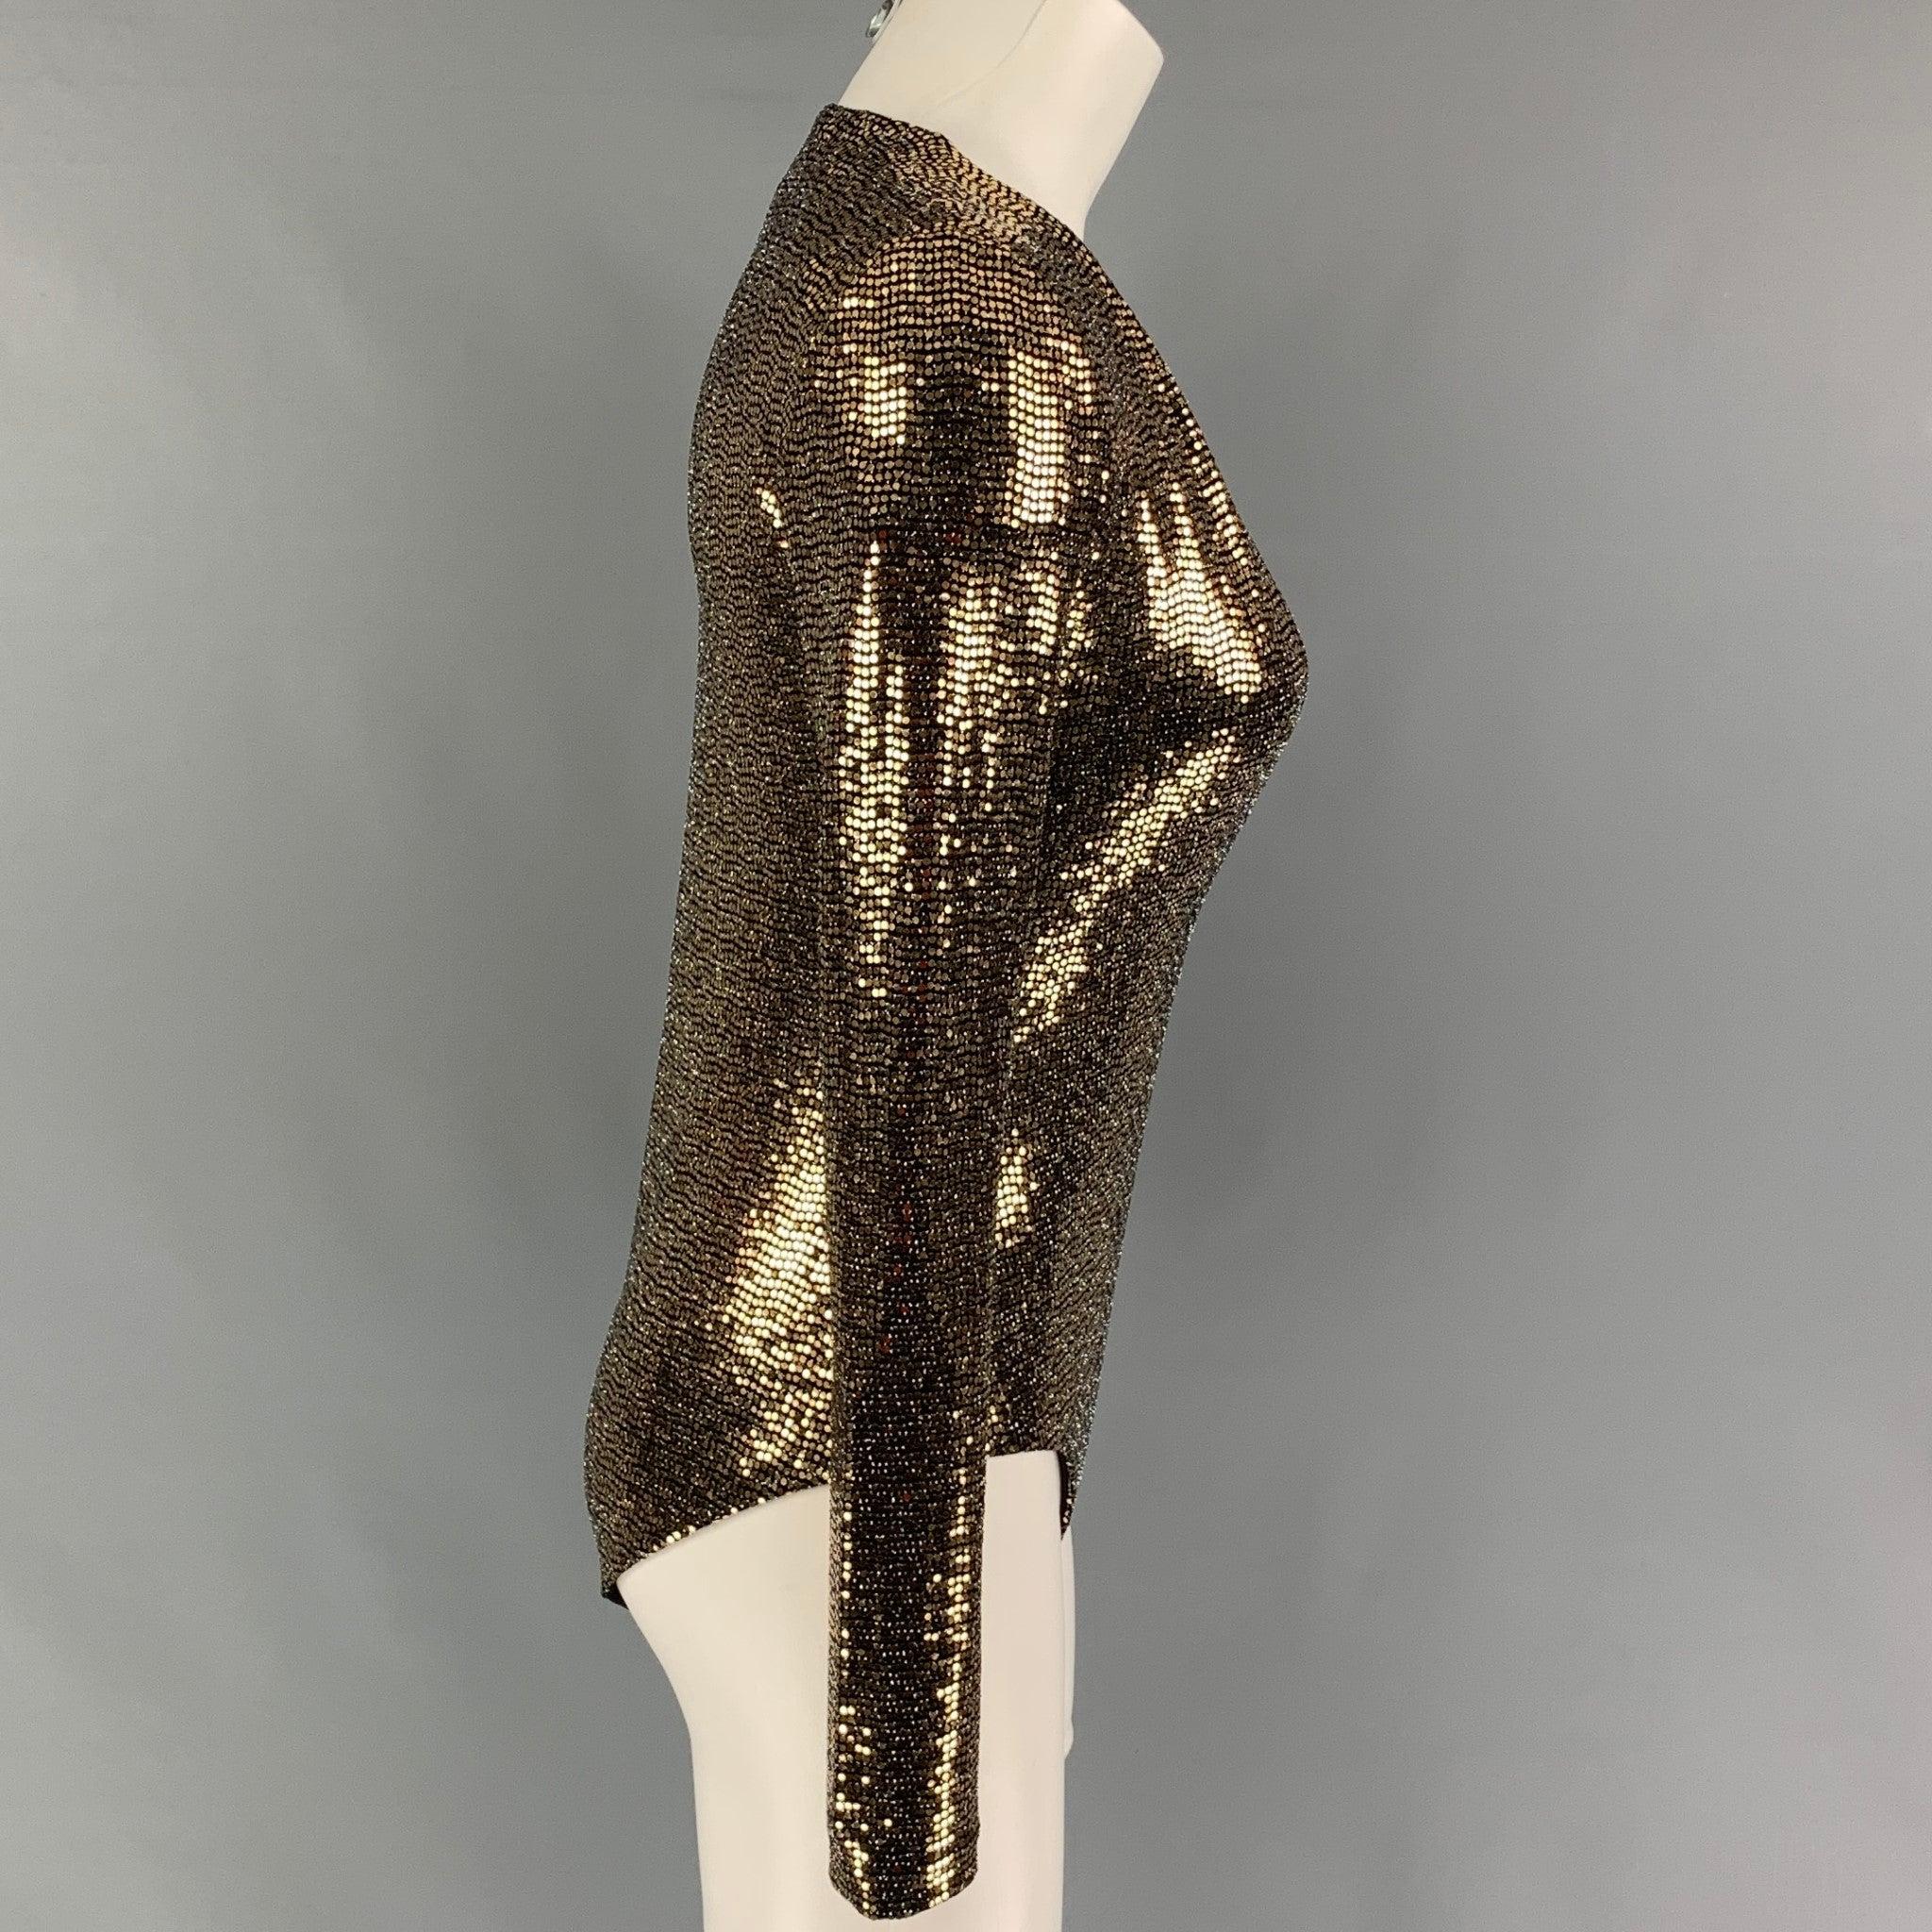 GUCCI Body Suit Top aus einer gold-schwarz-metallischen Polyamidmischung mit V-Ausschnitt, langen Ärmeln und Druckknopfverschluss.
Neu mit Tags.
 

Markiert:   S 

Abmessungen: 
 
Schultern:
14 Zoll Brustumfang: 30 Zoll  Ärmel: 25,5 Zoll  Länge: